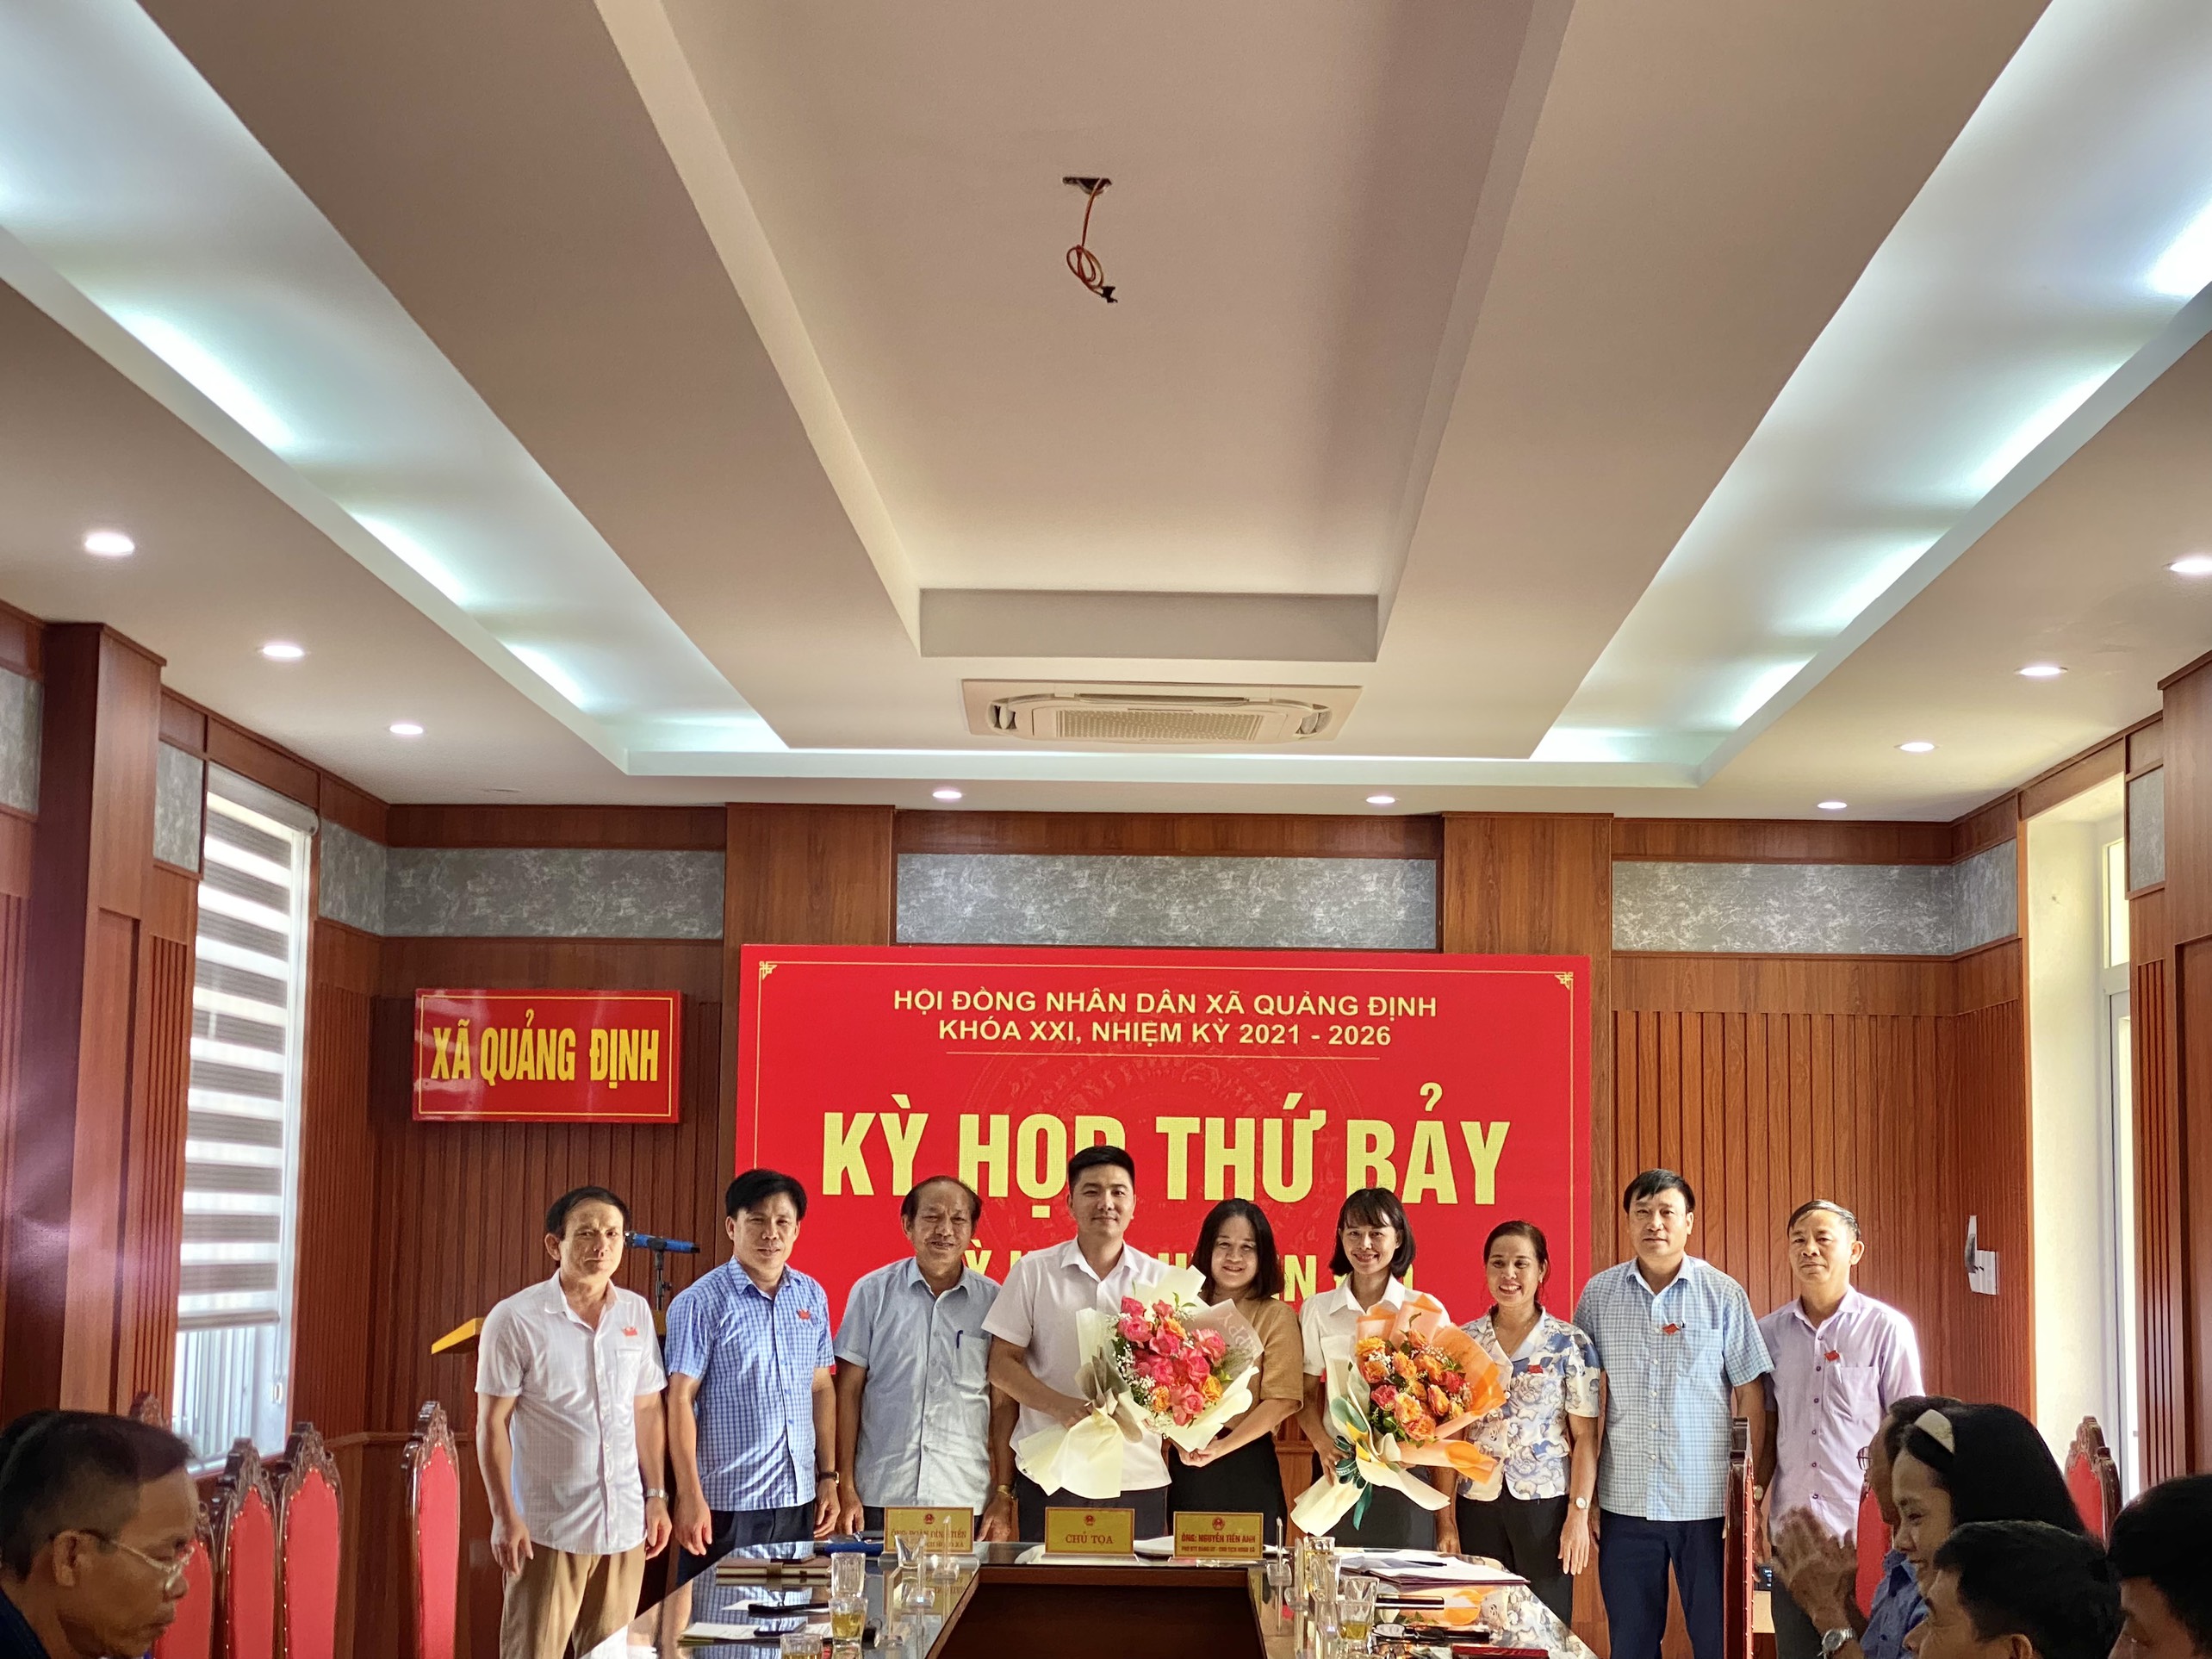 HĐND xã Quảng Định khóa XXI  tổ chức kỳ họp thứ 7 - kỳ họp chuyên đề, bầu các chức danh chủ chốt của HĐND xã, nhiệm kỳ 2021 – 2026